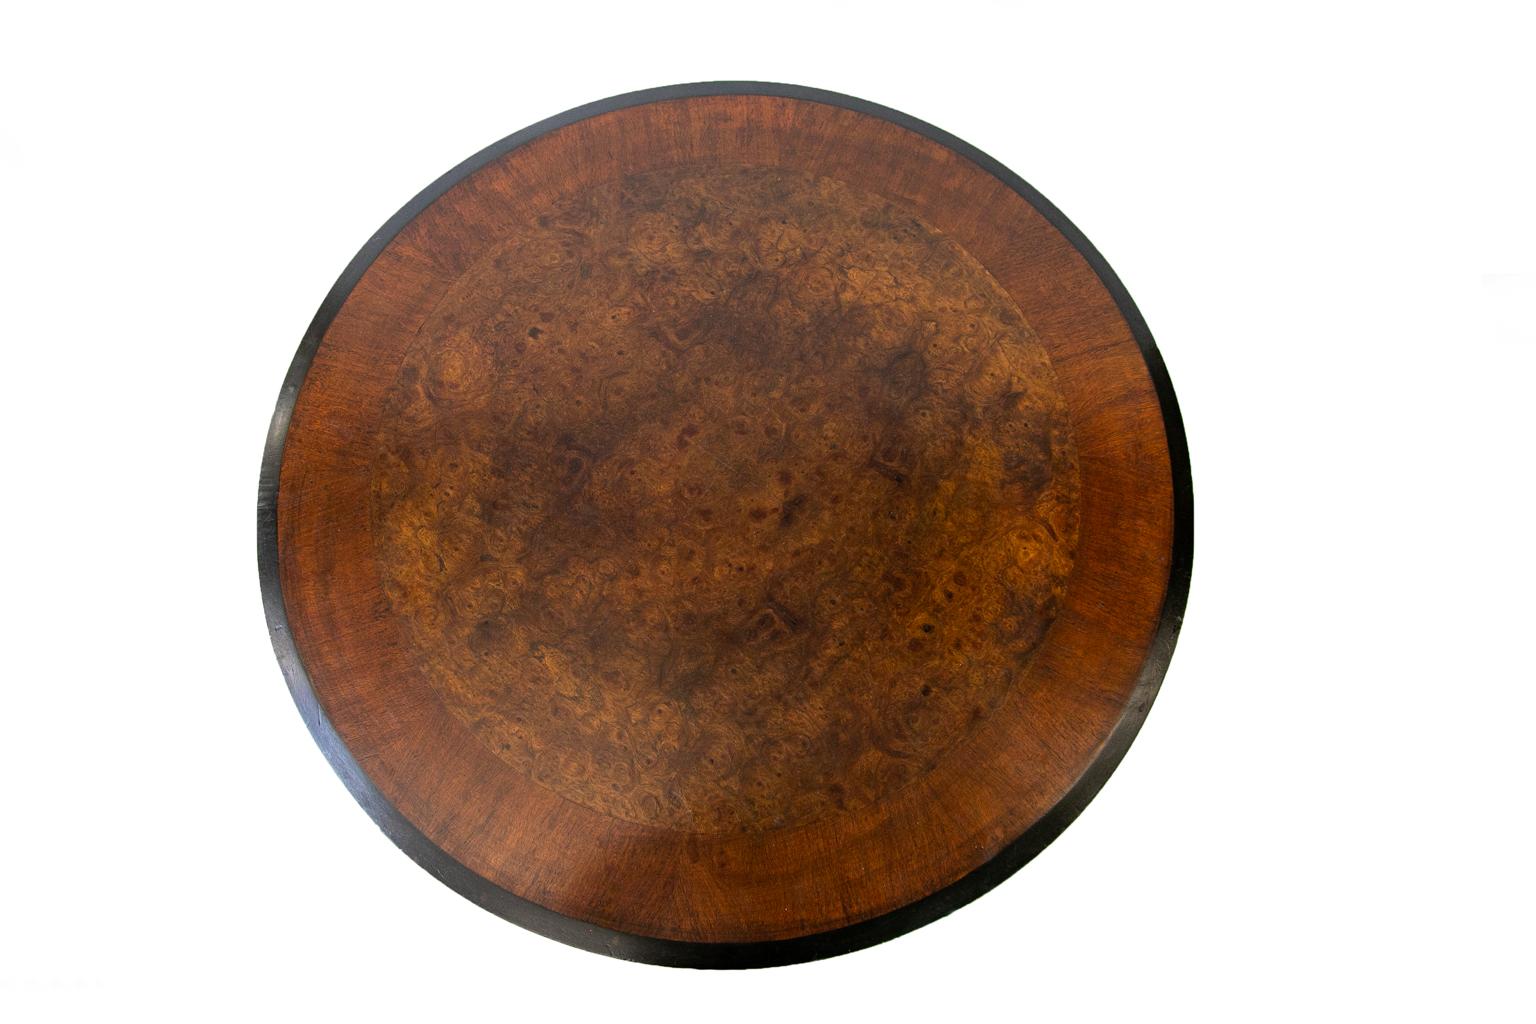 Englischer Sockel-Mitteltisch aus Nussbaum, die Platte ist mit Nussbaumfurnier in Buchform versehen, hat einen drei Zoll breiten Rand und eine abgeschrägte schwarze Kante. Der obere Rand ist ebenfalls über den gesamten Umfang mit einem Querband